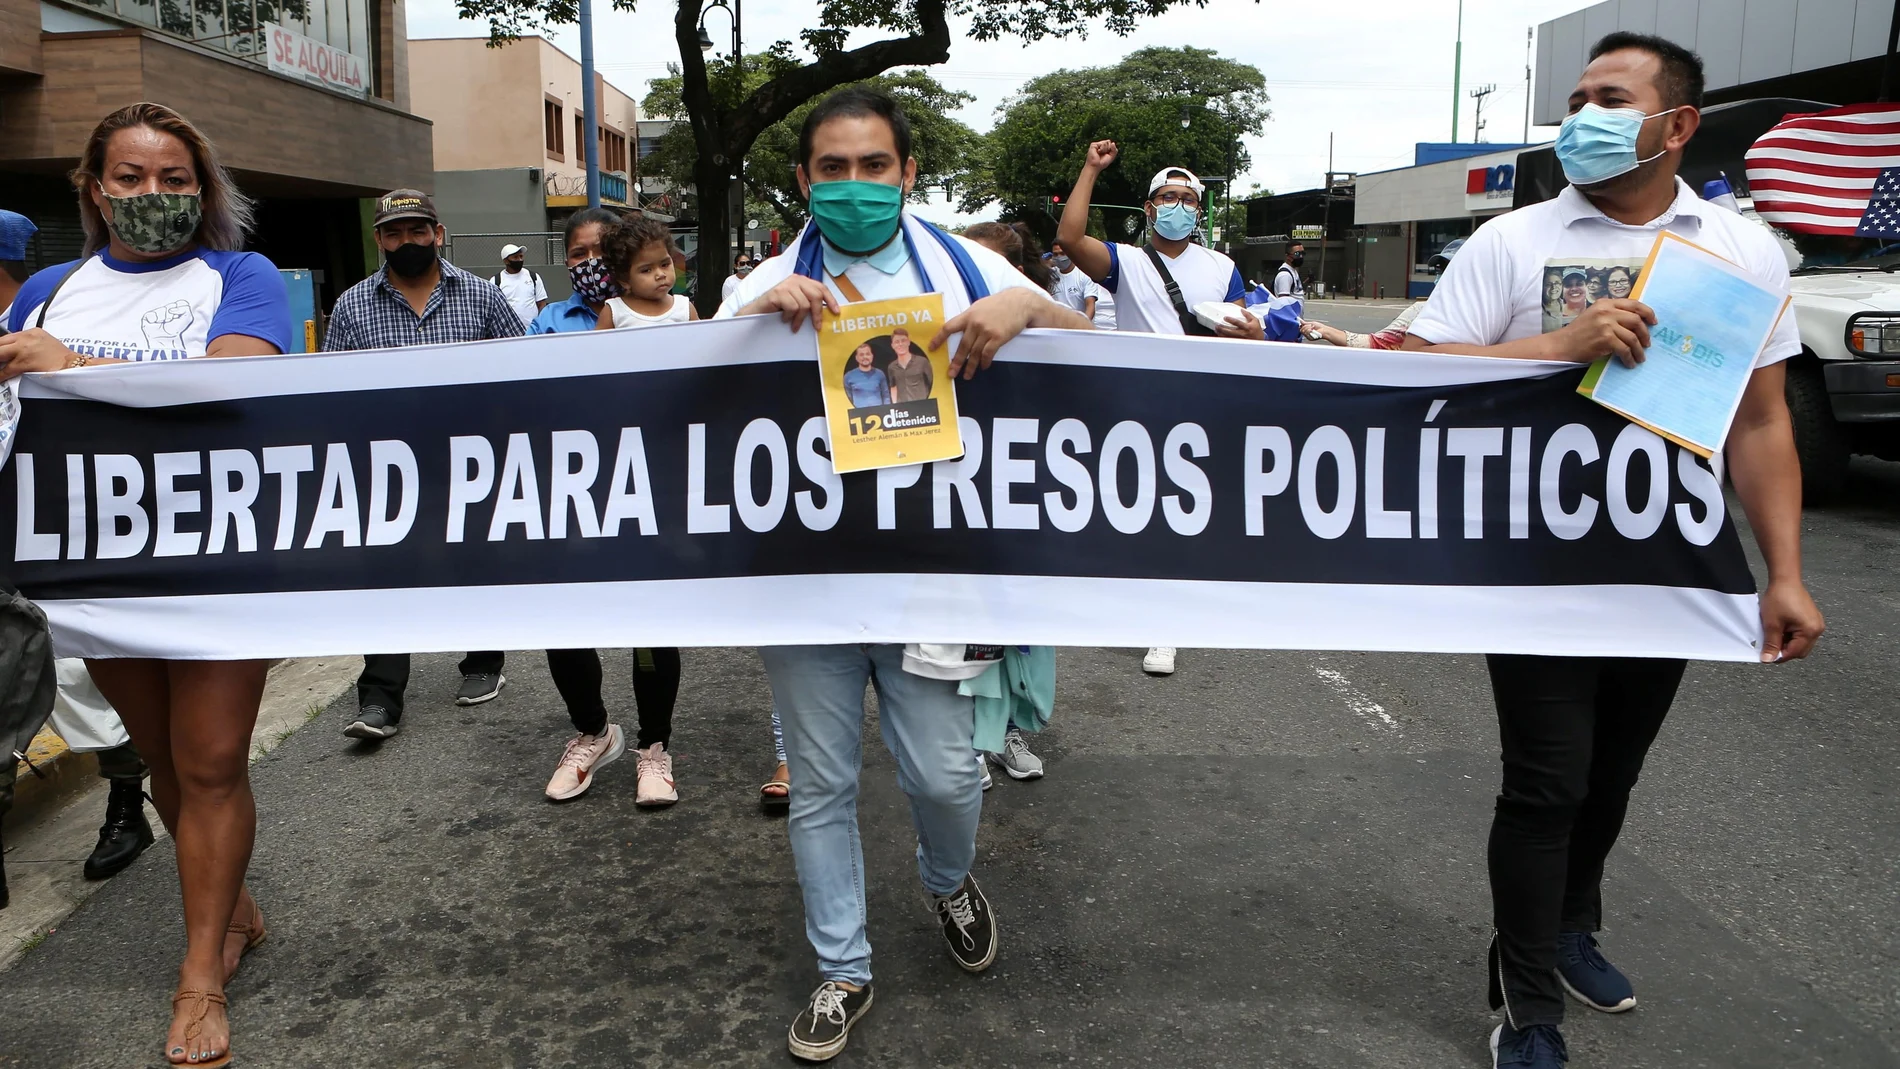 Nicaragüenses exiliados en Costa Rica sostienen una pancarta que dice "Libertad para los presos políticos"